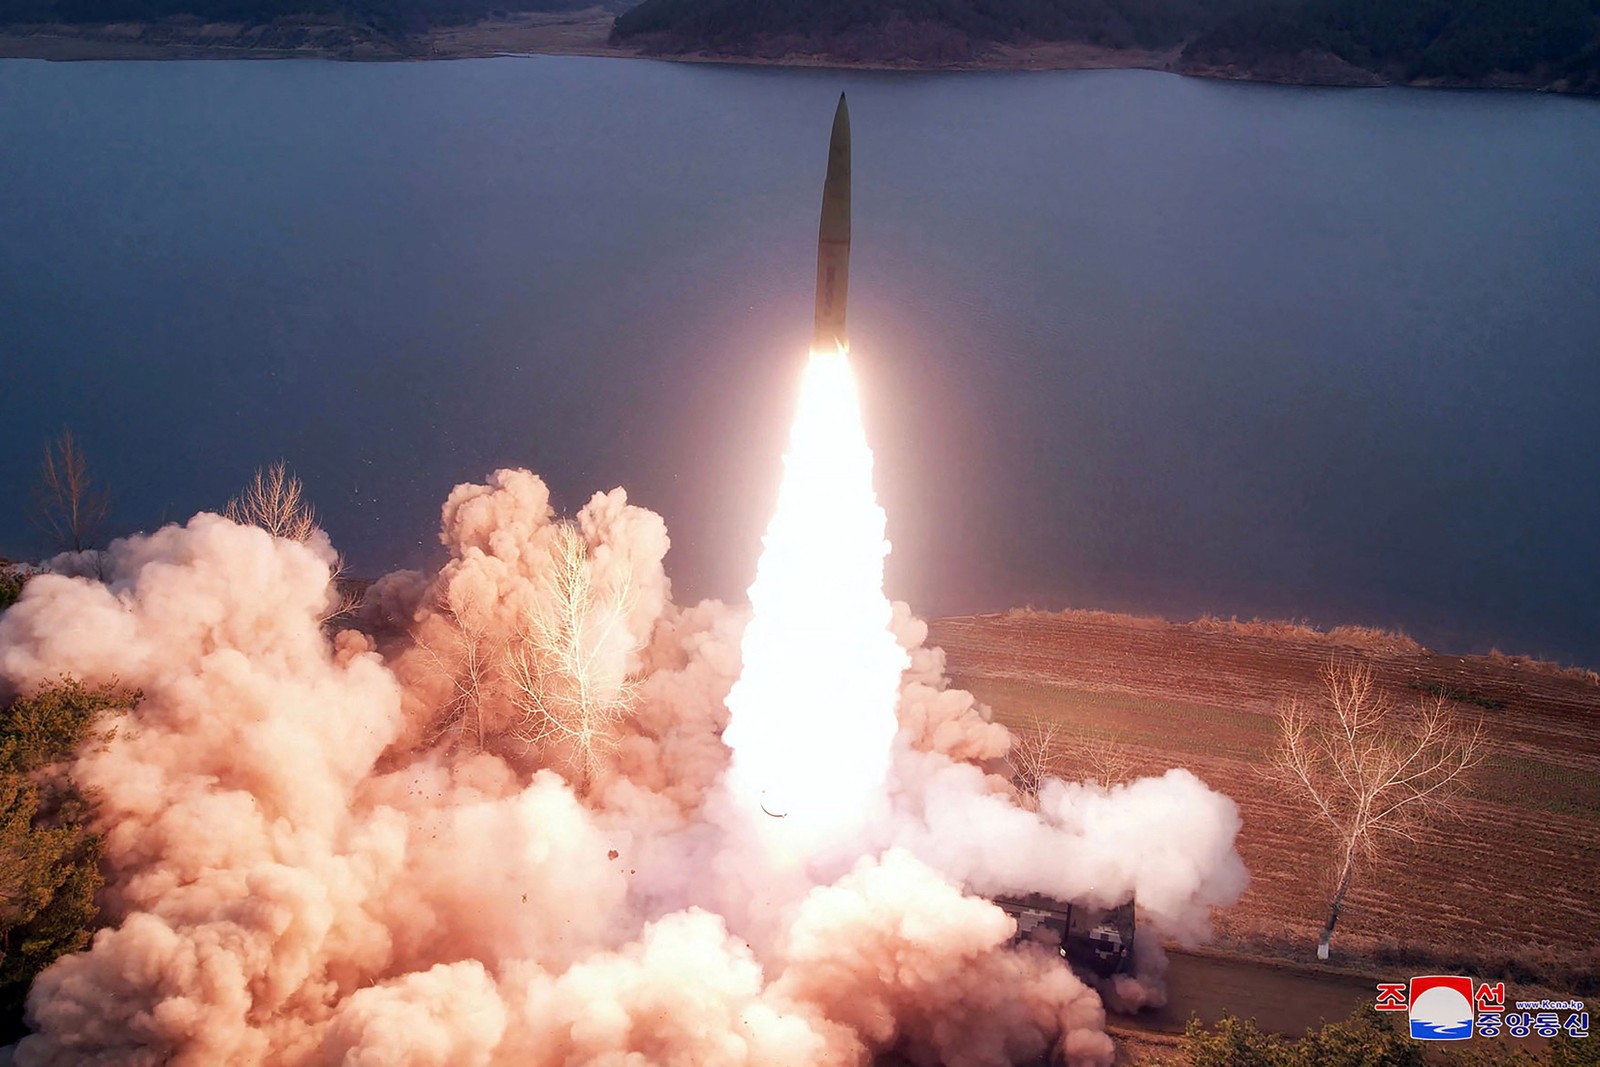 Agência Central de Notícias da Coreia do Norte divulga imagem de míssil sendo lançado em lugar não revelado — Foto: AFP